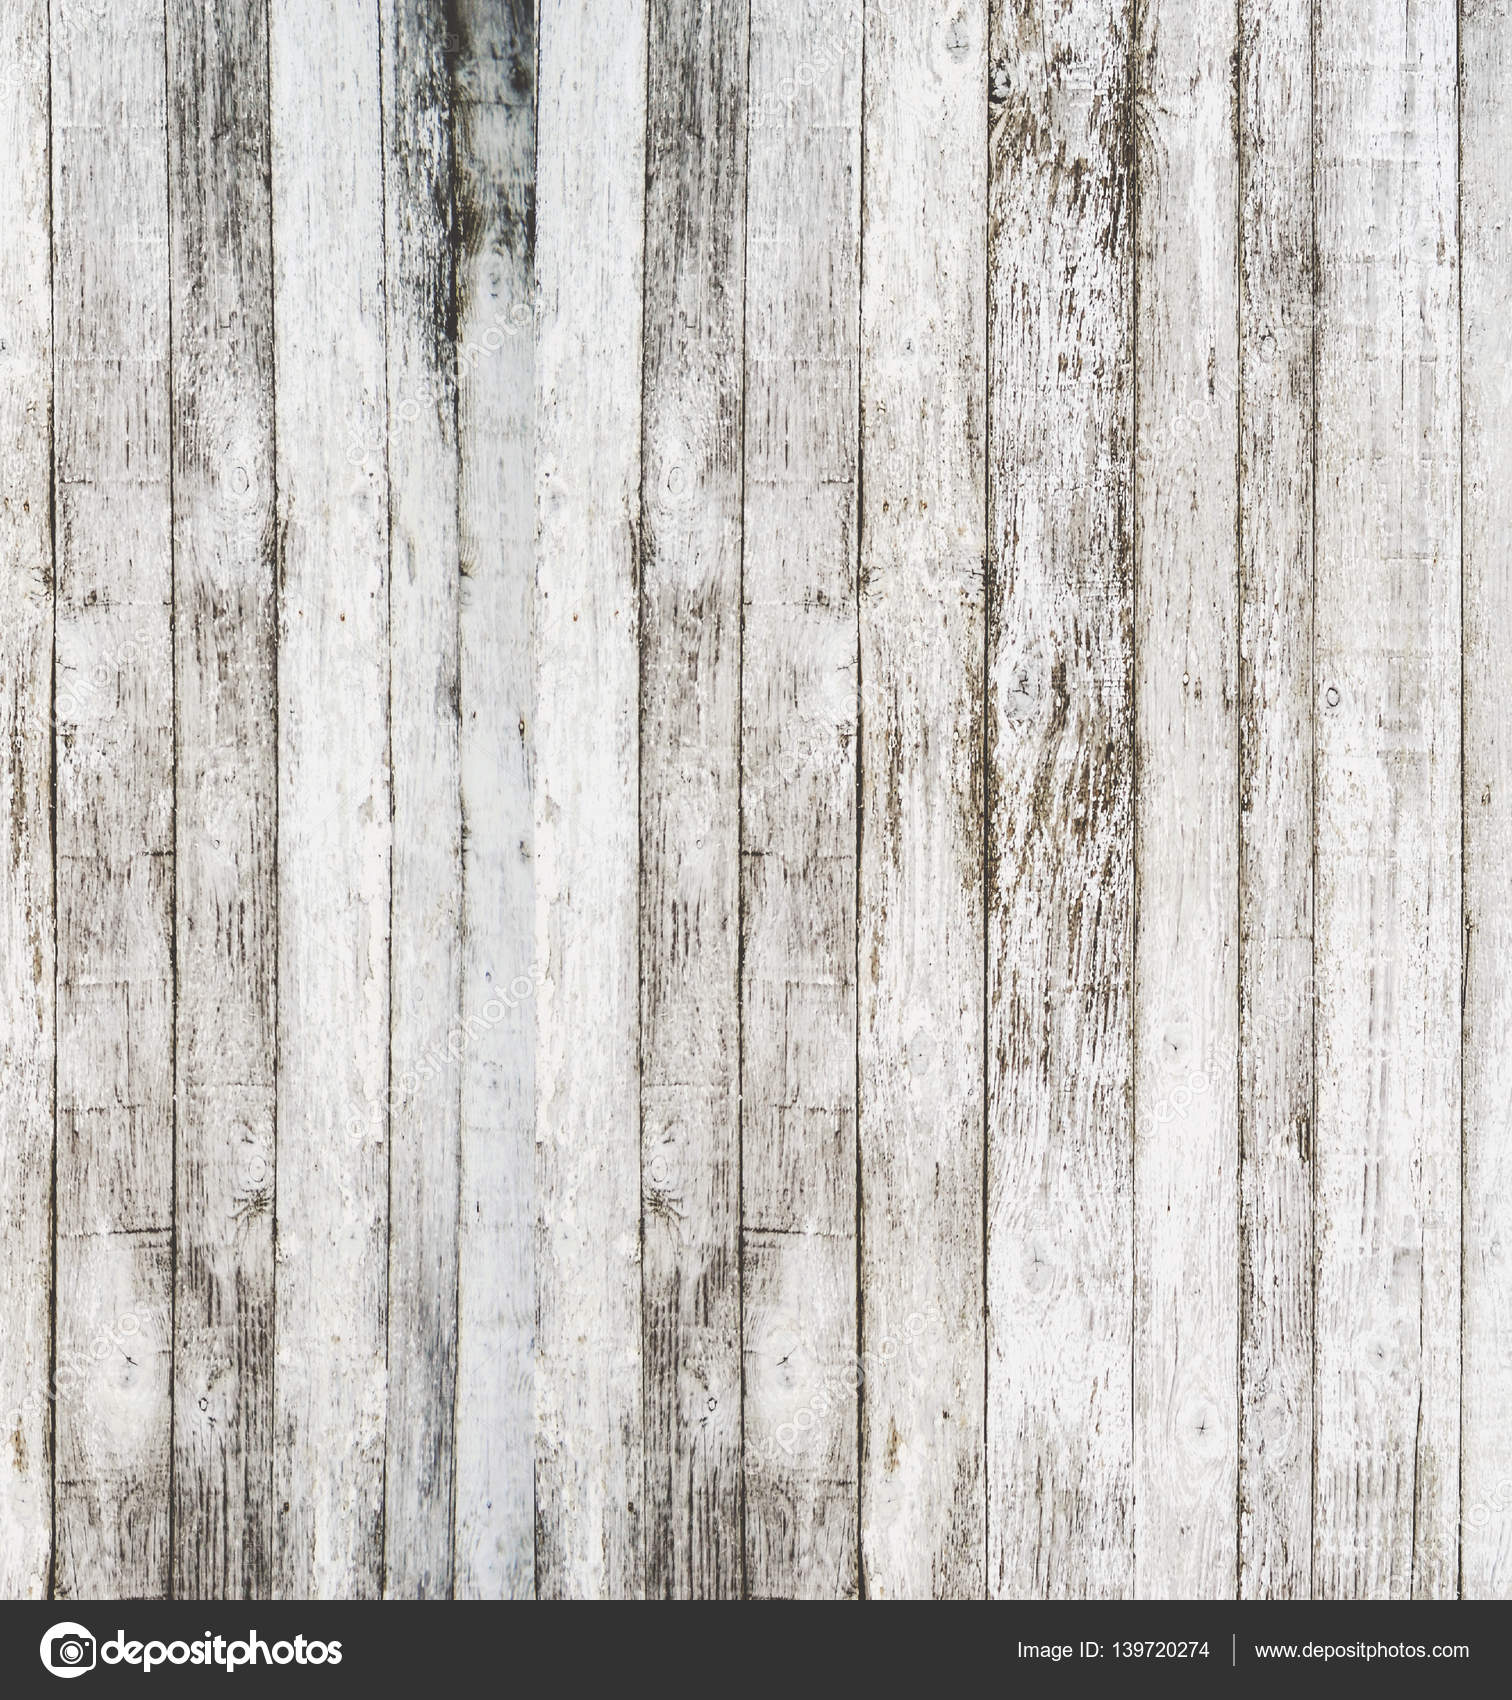 White wood background — Stock Photo © Alexis84 #139720274